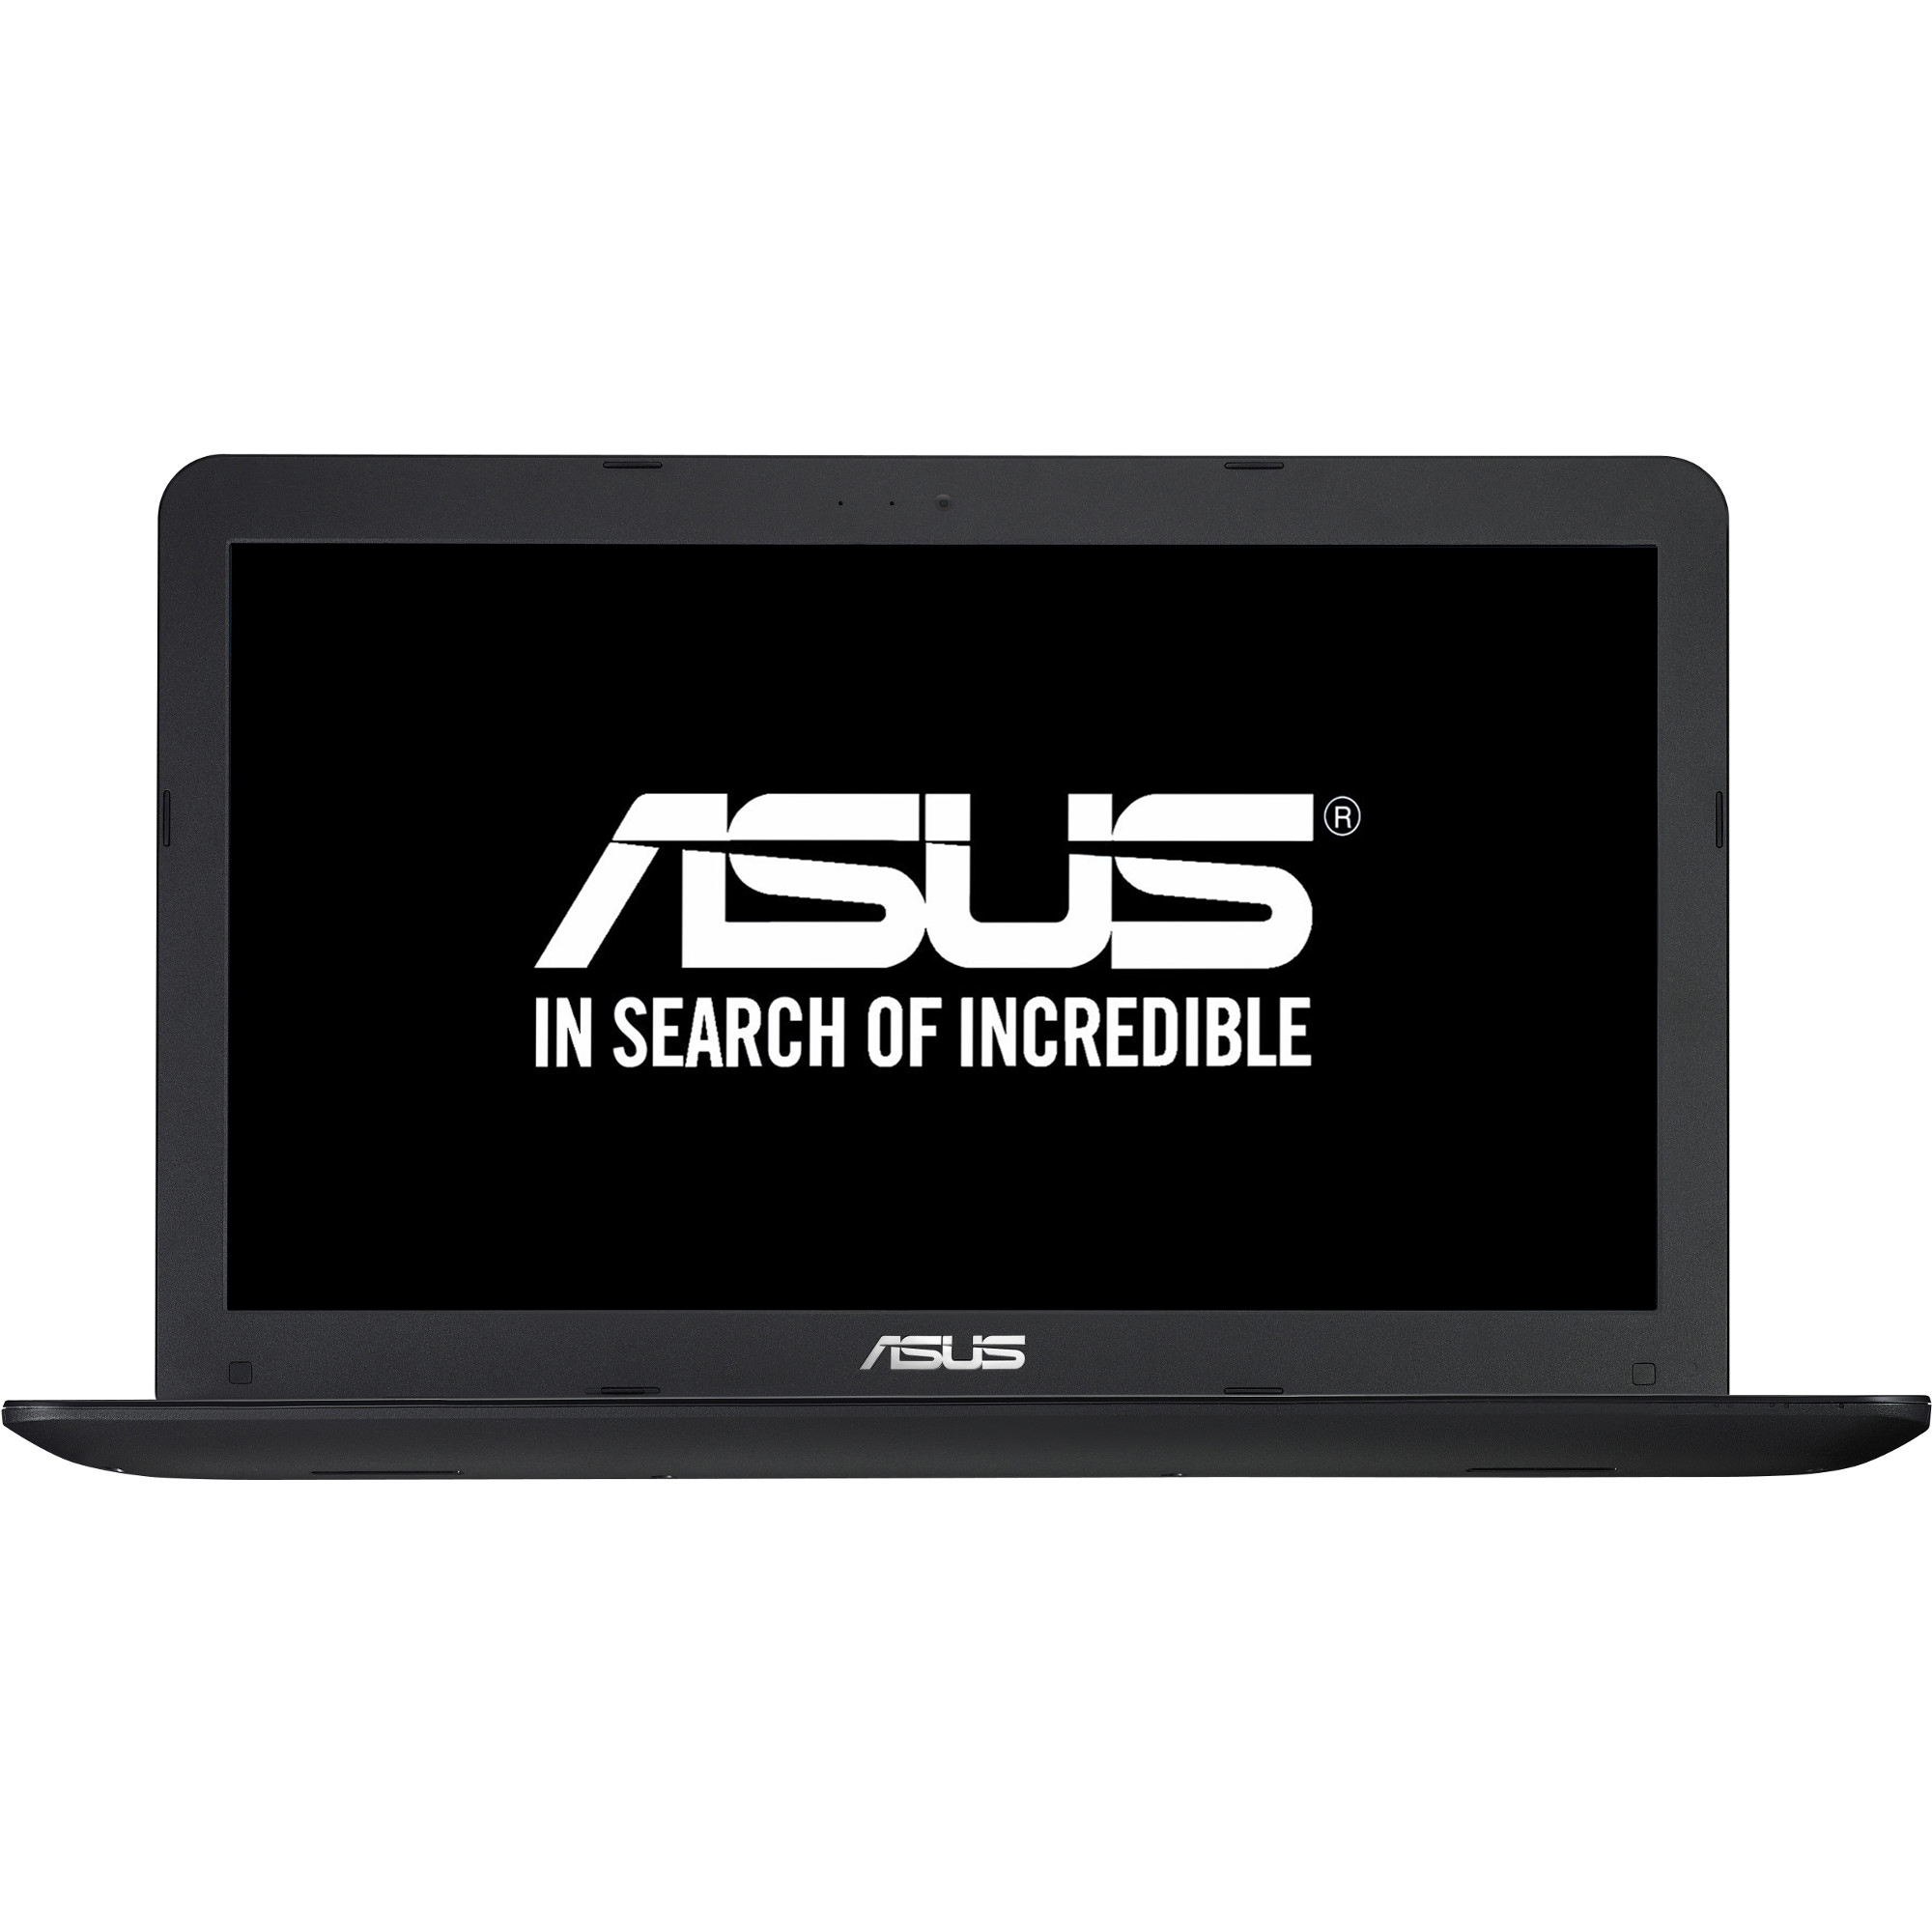  Laptop Asus A555LF-XX407D, Intel Core i3-5005U, 4GB DDR3, HDD 1TB, nVidia GeForce 930M 2GB, Free DOS 